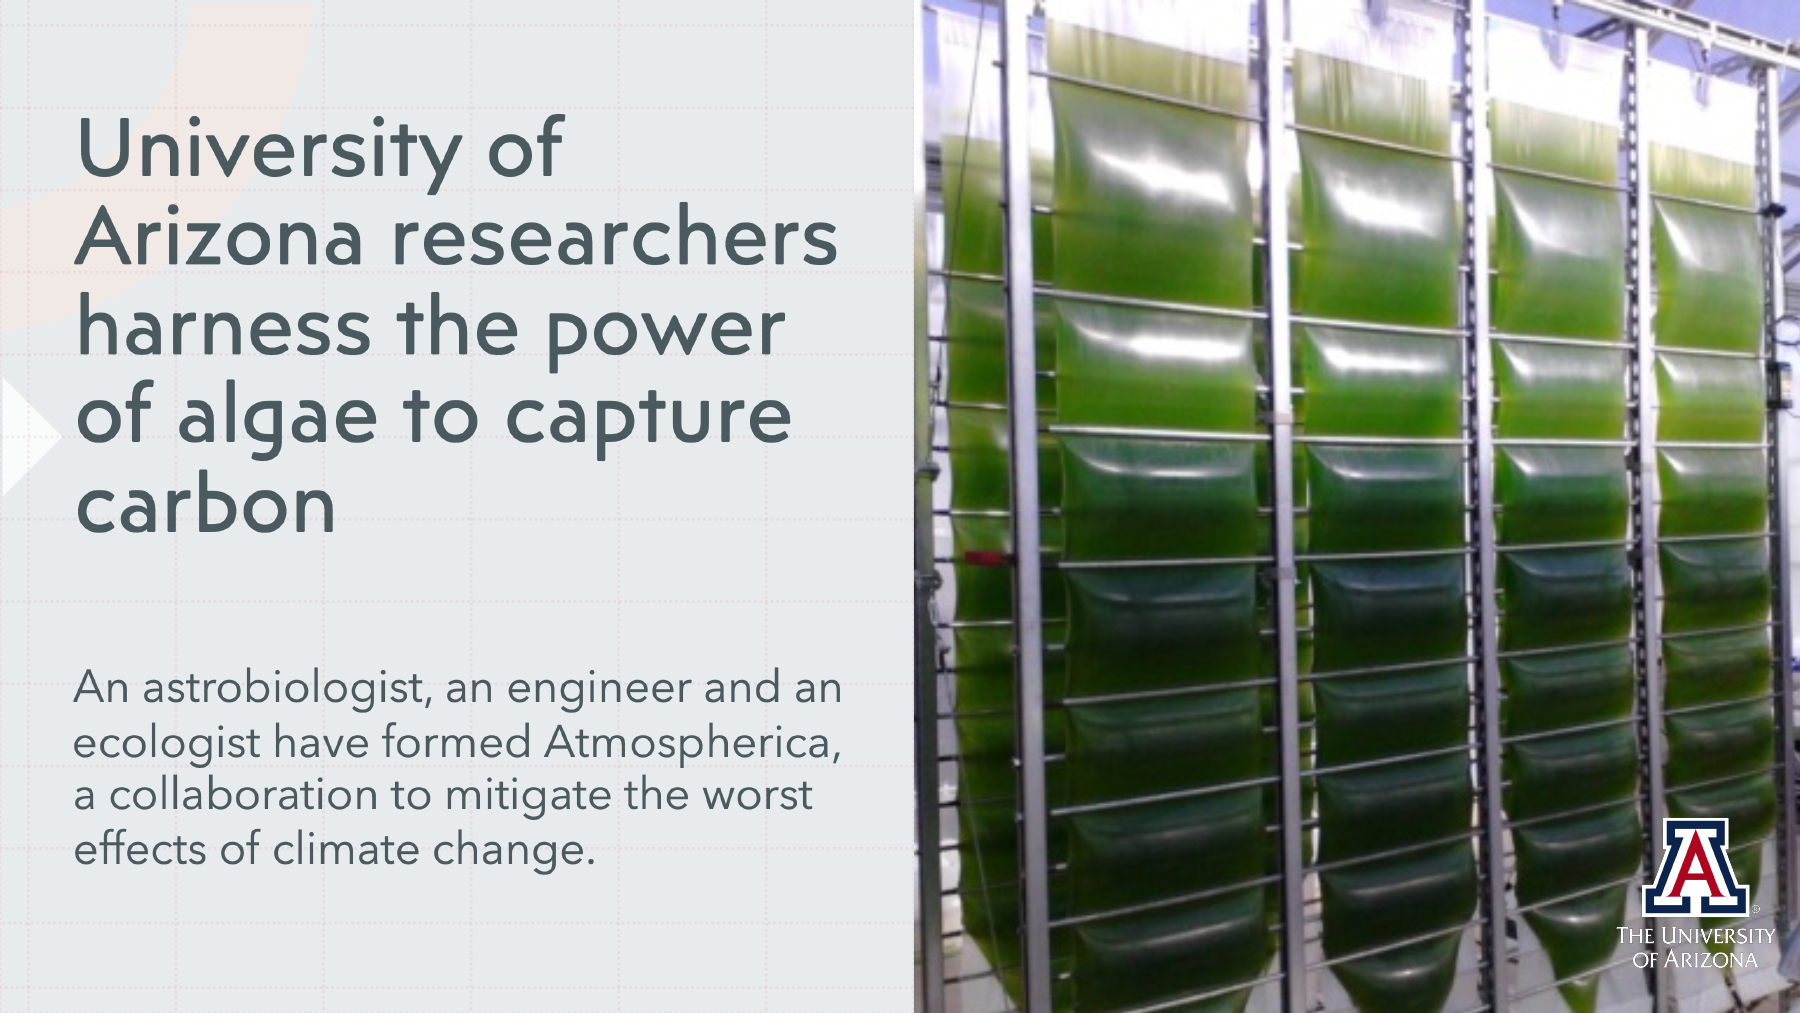 University of Arizona researchers harness the power of algae to capture carbon